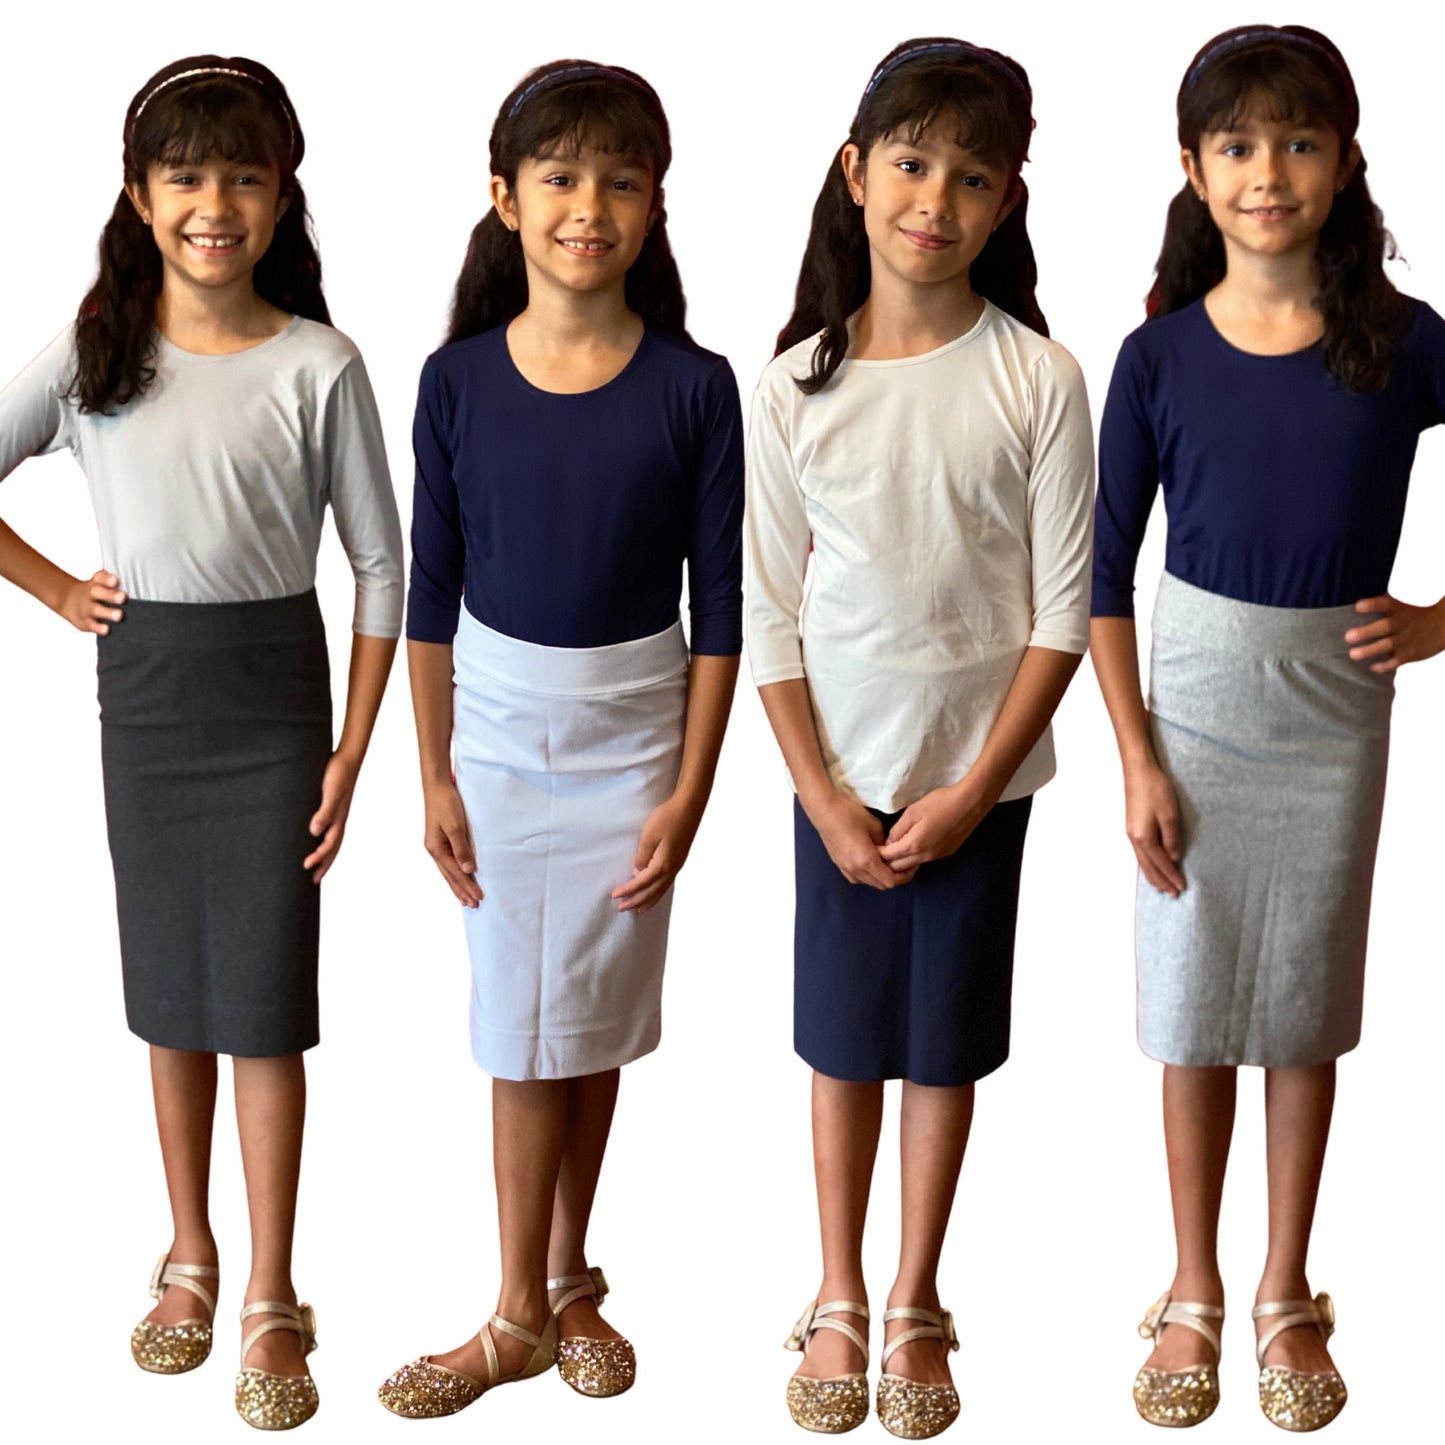 Junior Midi Skirt / Modest Skirt / Knee Length Skirt / White Skirt for School Uniform/ School Approved Skirt / Sz 6-16 / tzniut girl